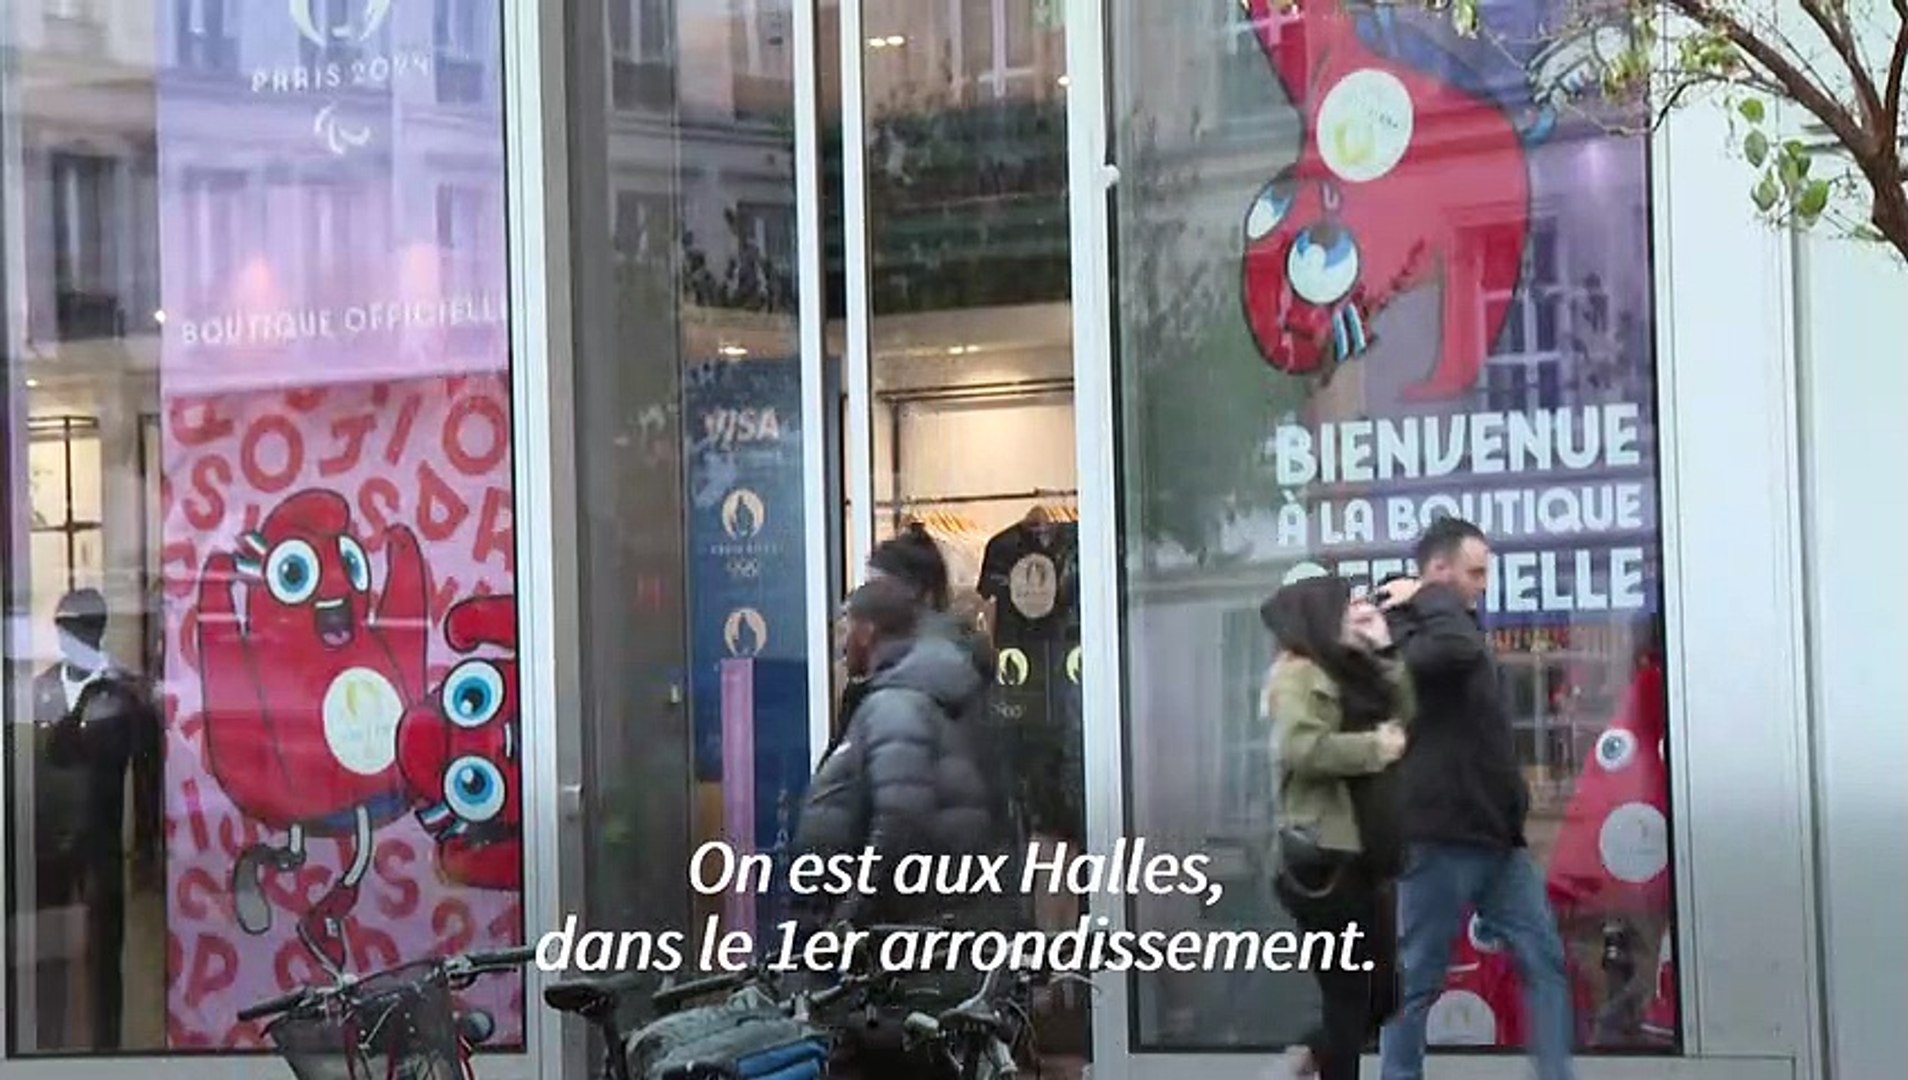 Paris 2024 - La boutique des Jeux